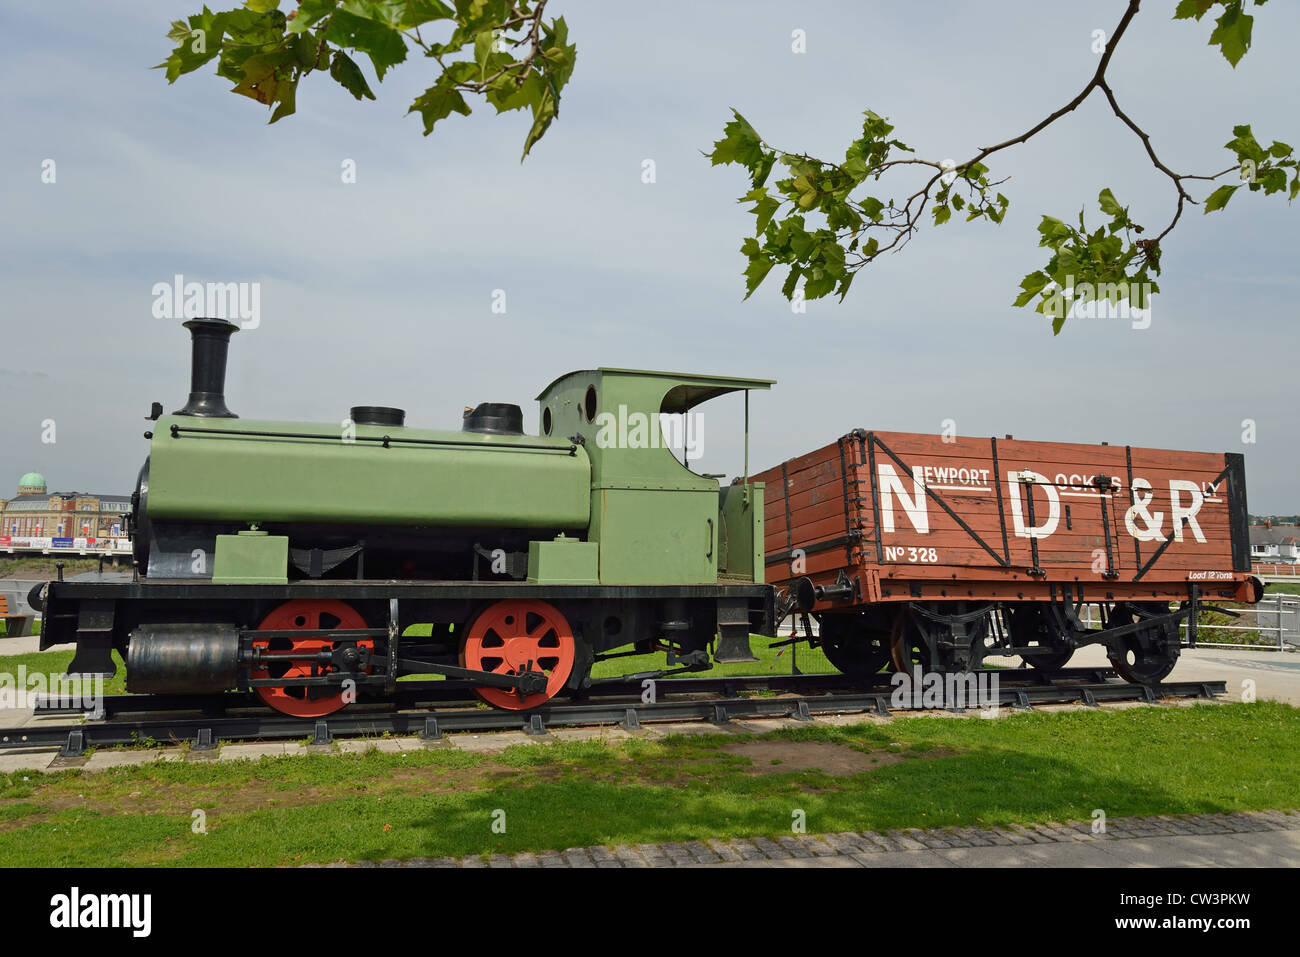 Train à vapeur d'époque en bord de rivière, ville de Newport (Casnewydd), pays de Galles (Cymru), Royaume-Uni Banque D'Images